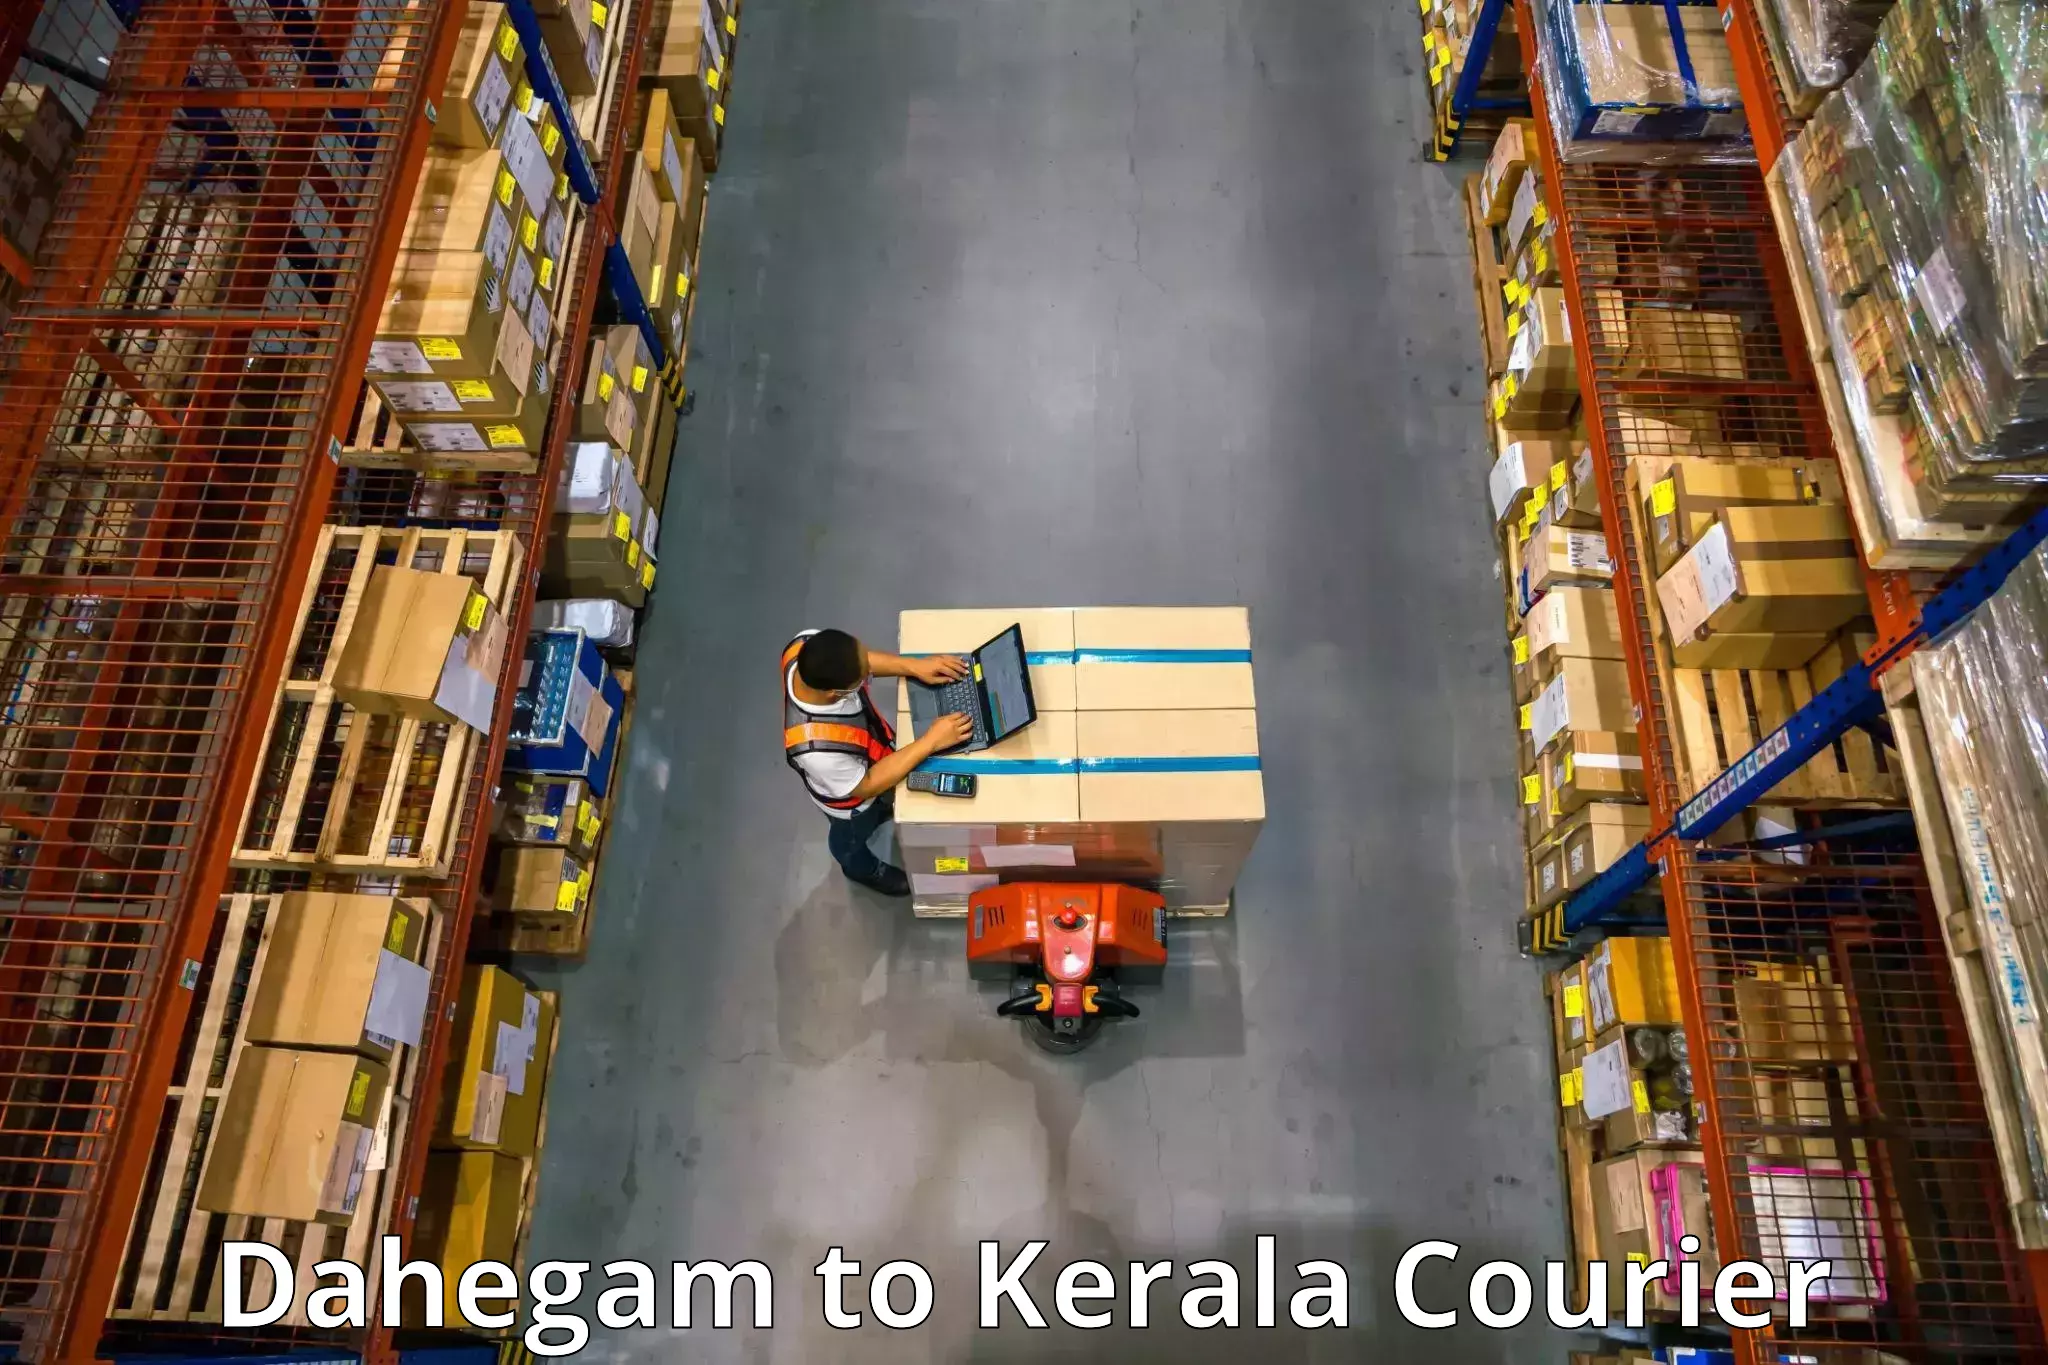 Home goods moving company Dahegam to Kochi